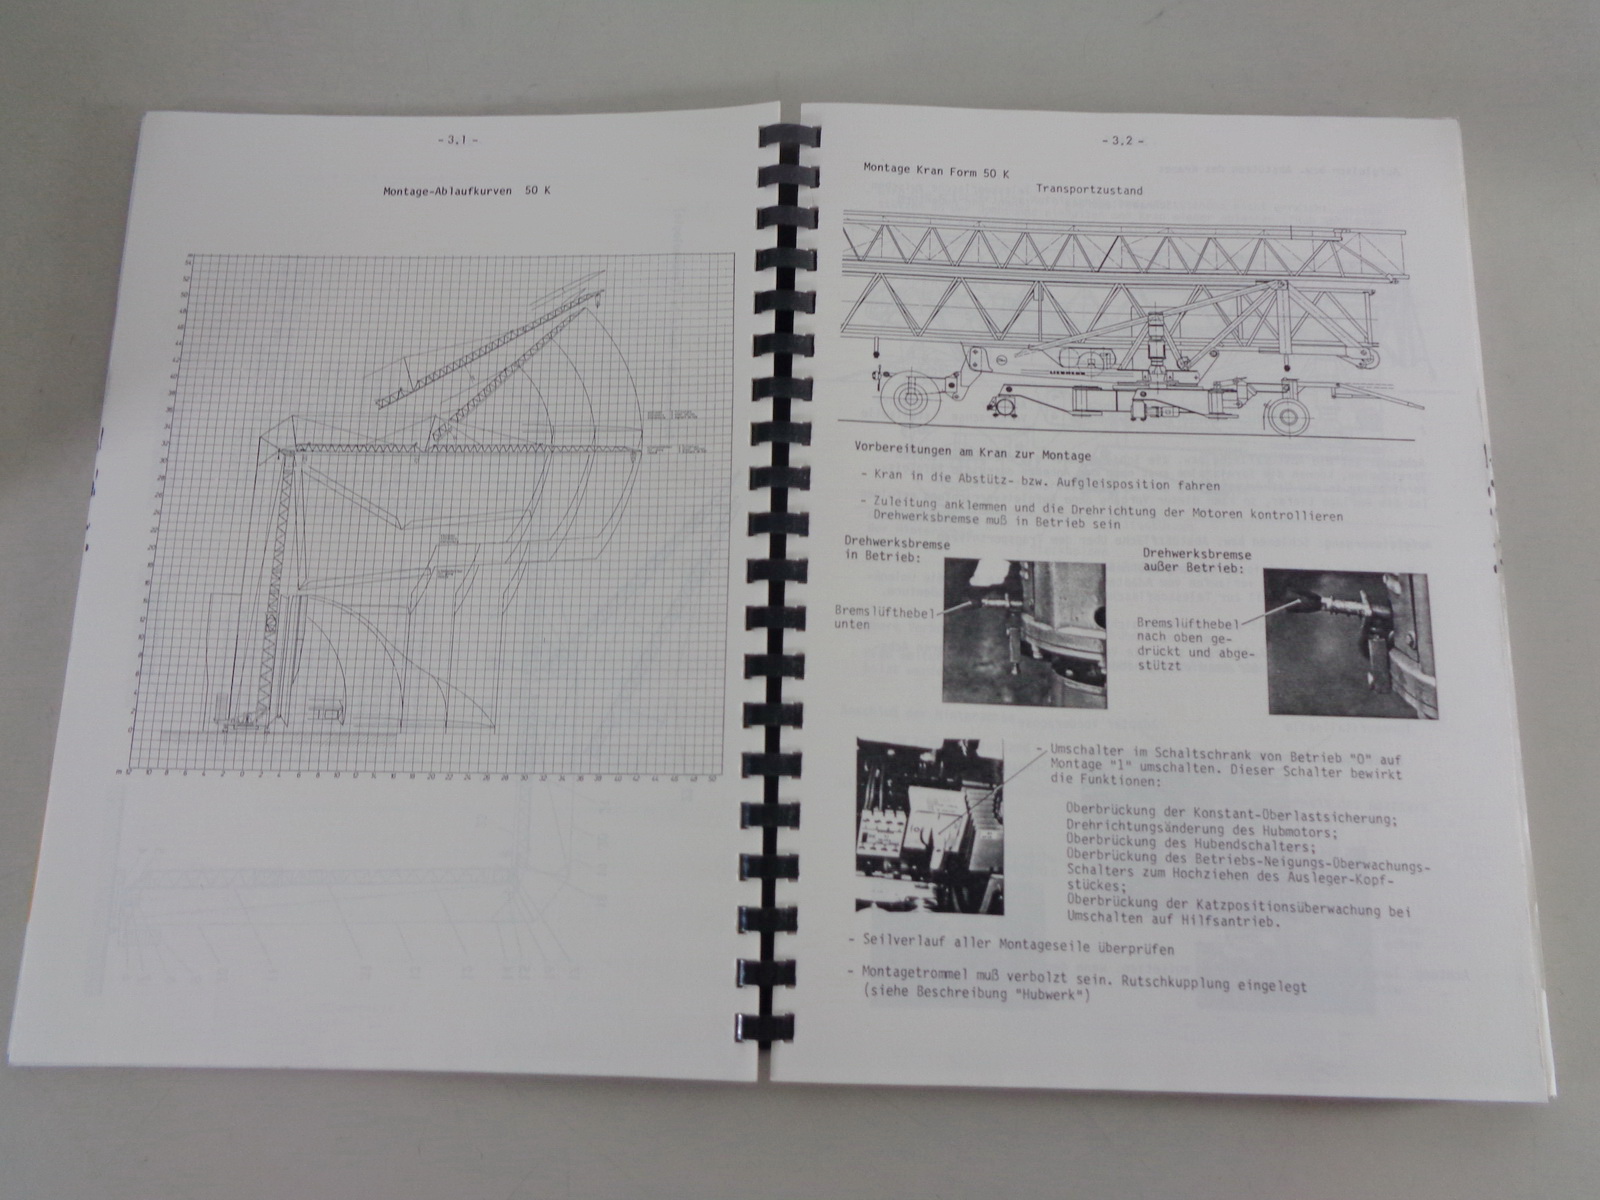 Datenblatt Technische Beschreibung Liebherr Turmdrehkran 2000 HC von 06/1986 